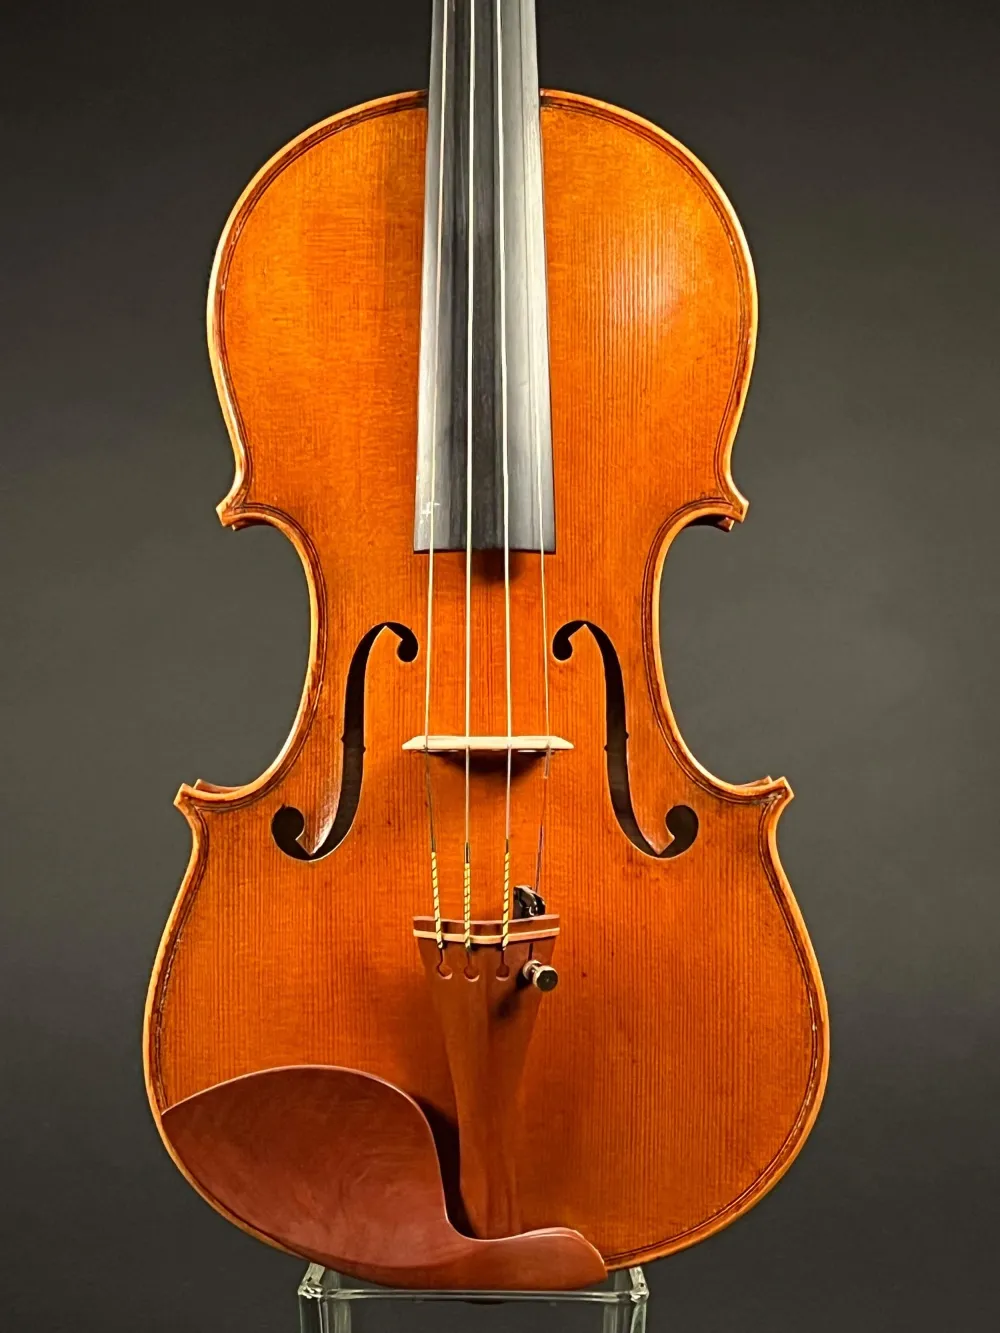 Decke-Detailansicht einer Butiu Cornel "Professional" Geige (Violine) Handarbeit 2018